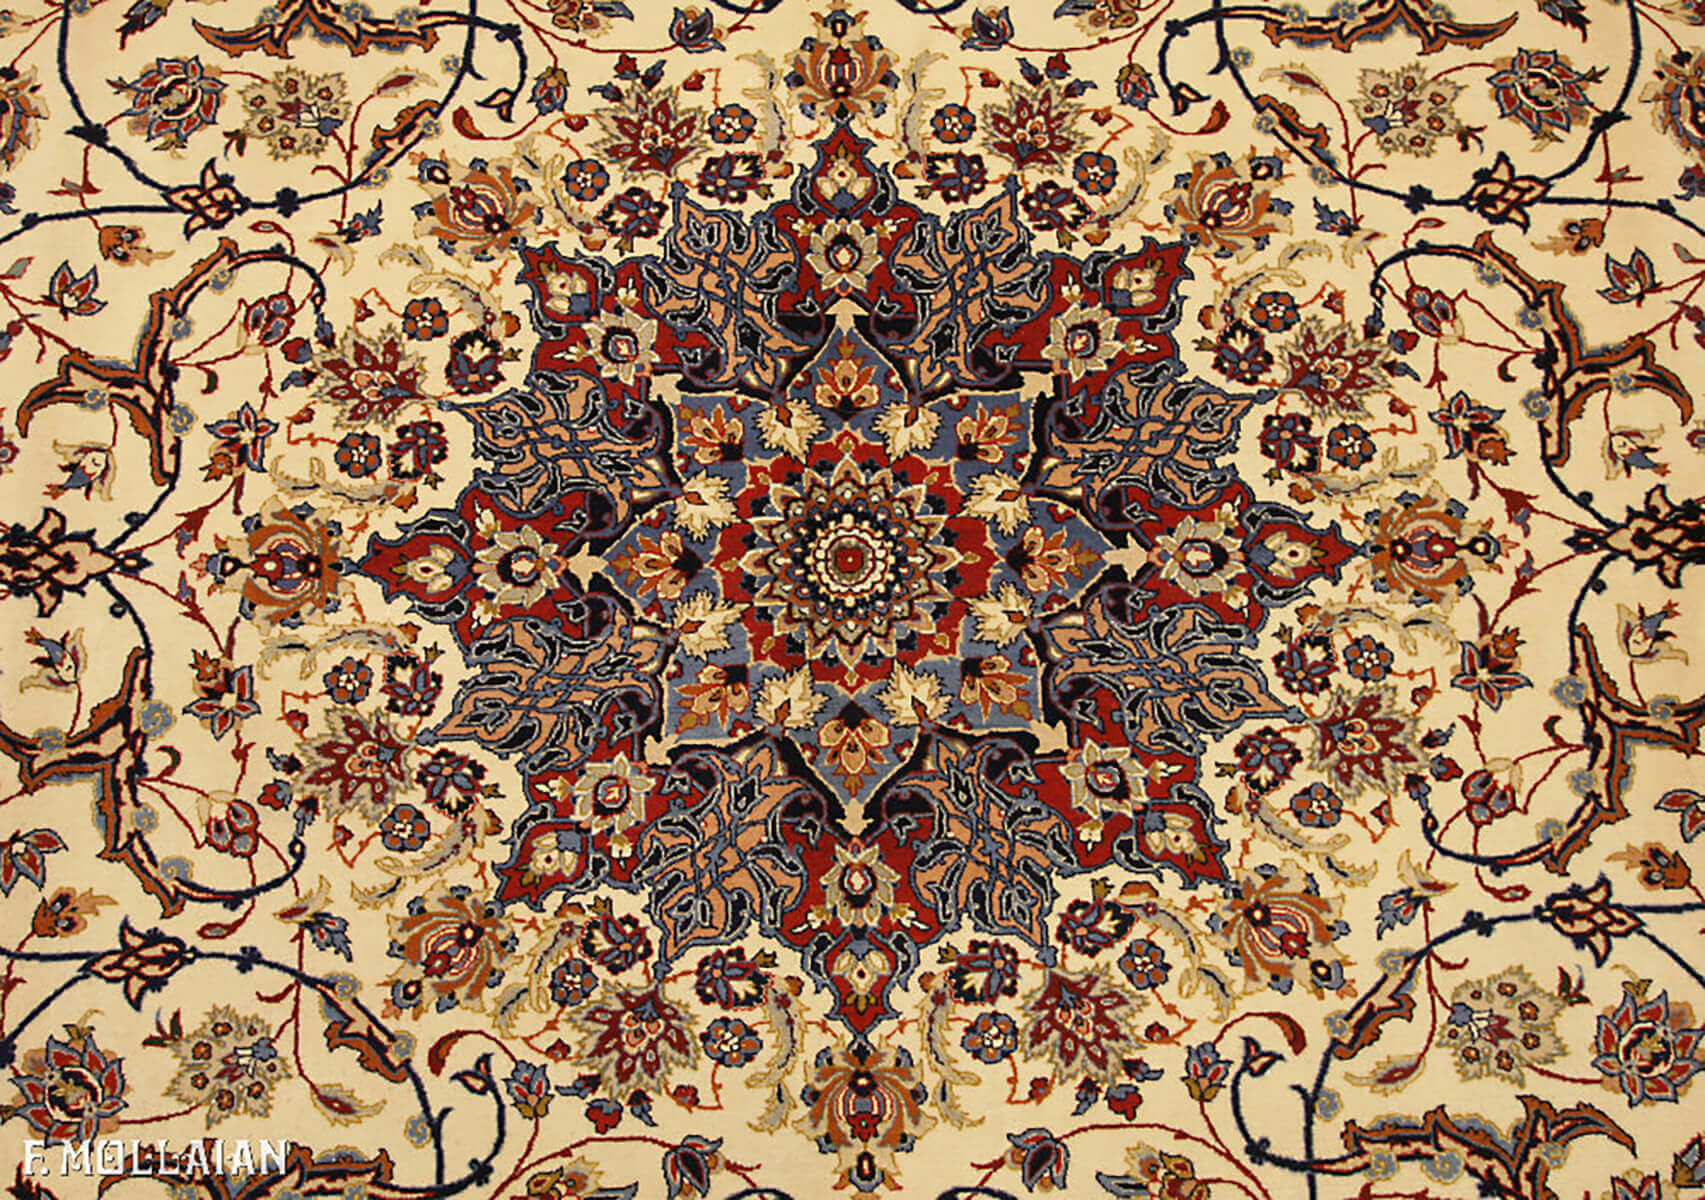 فرش نیمه آنتیک اصفهان با ریشه ابریشم کد:۵۱۵۱۳۷۱۸